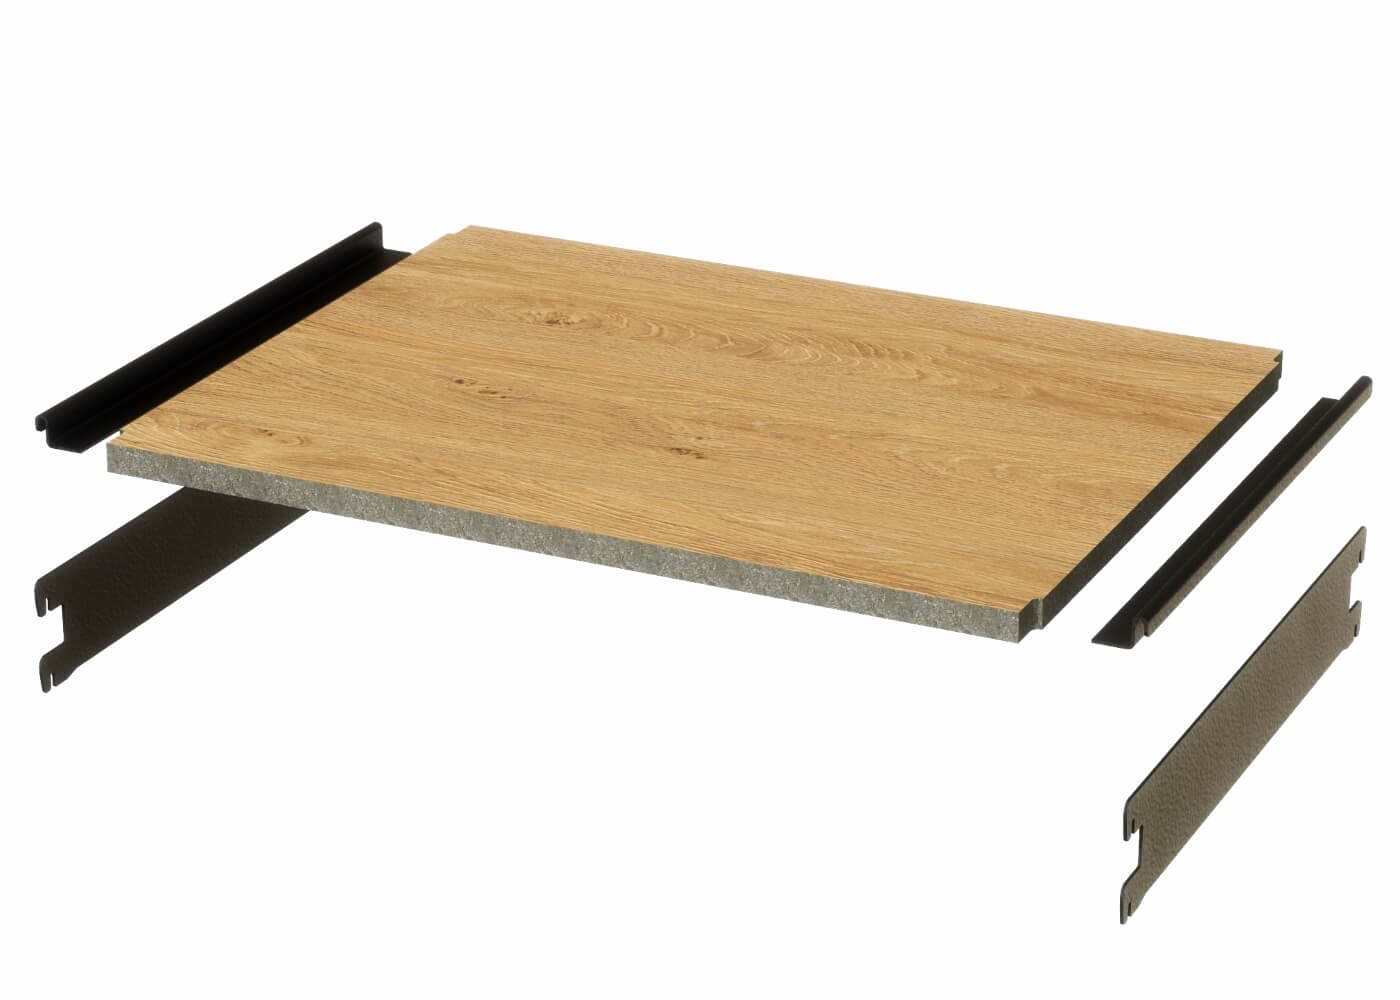 Holzfachboden HEAVY S in Eiche für das Ladenbau Regalsystem ELEGANCE - Set ohne Verstärkungsprofile (extra) HB